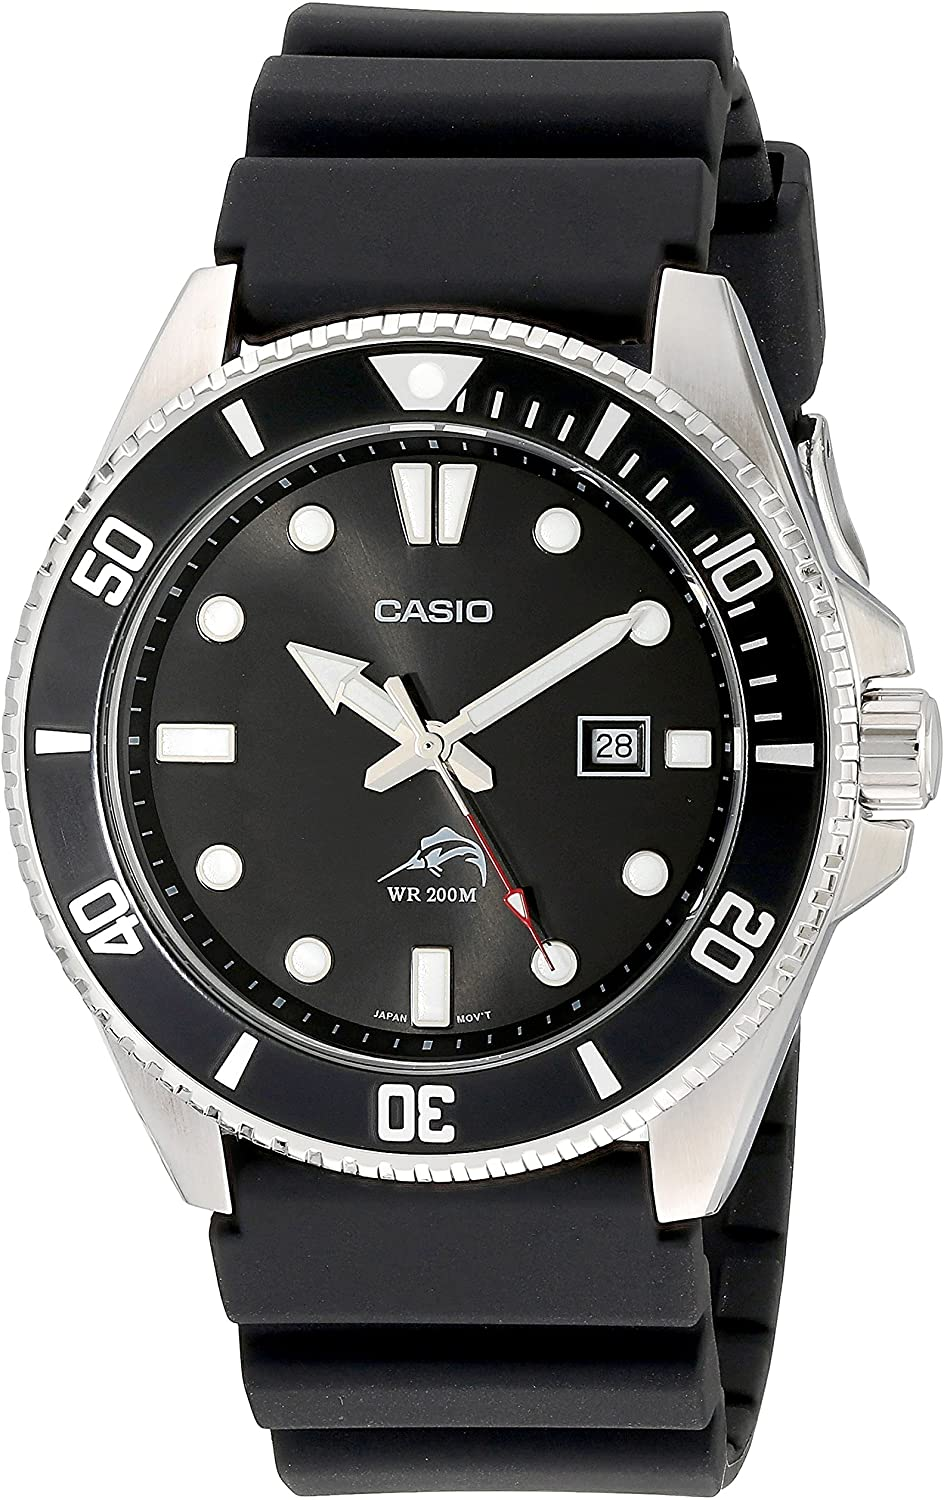 Casio Men's MDV106-1AV 200M Duro Analog Watch $39